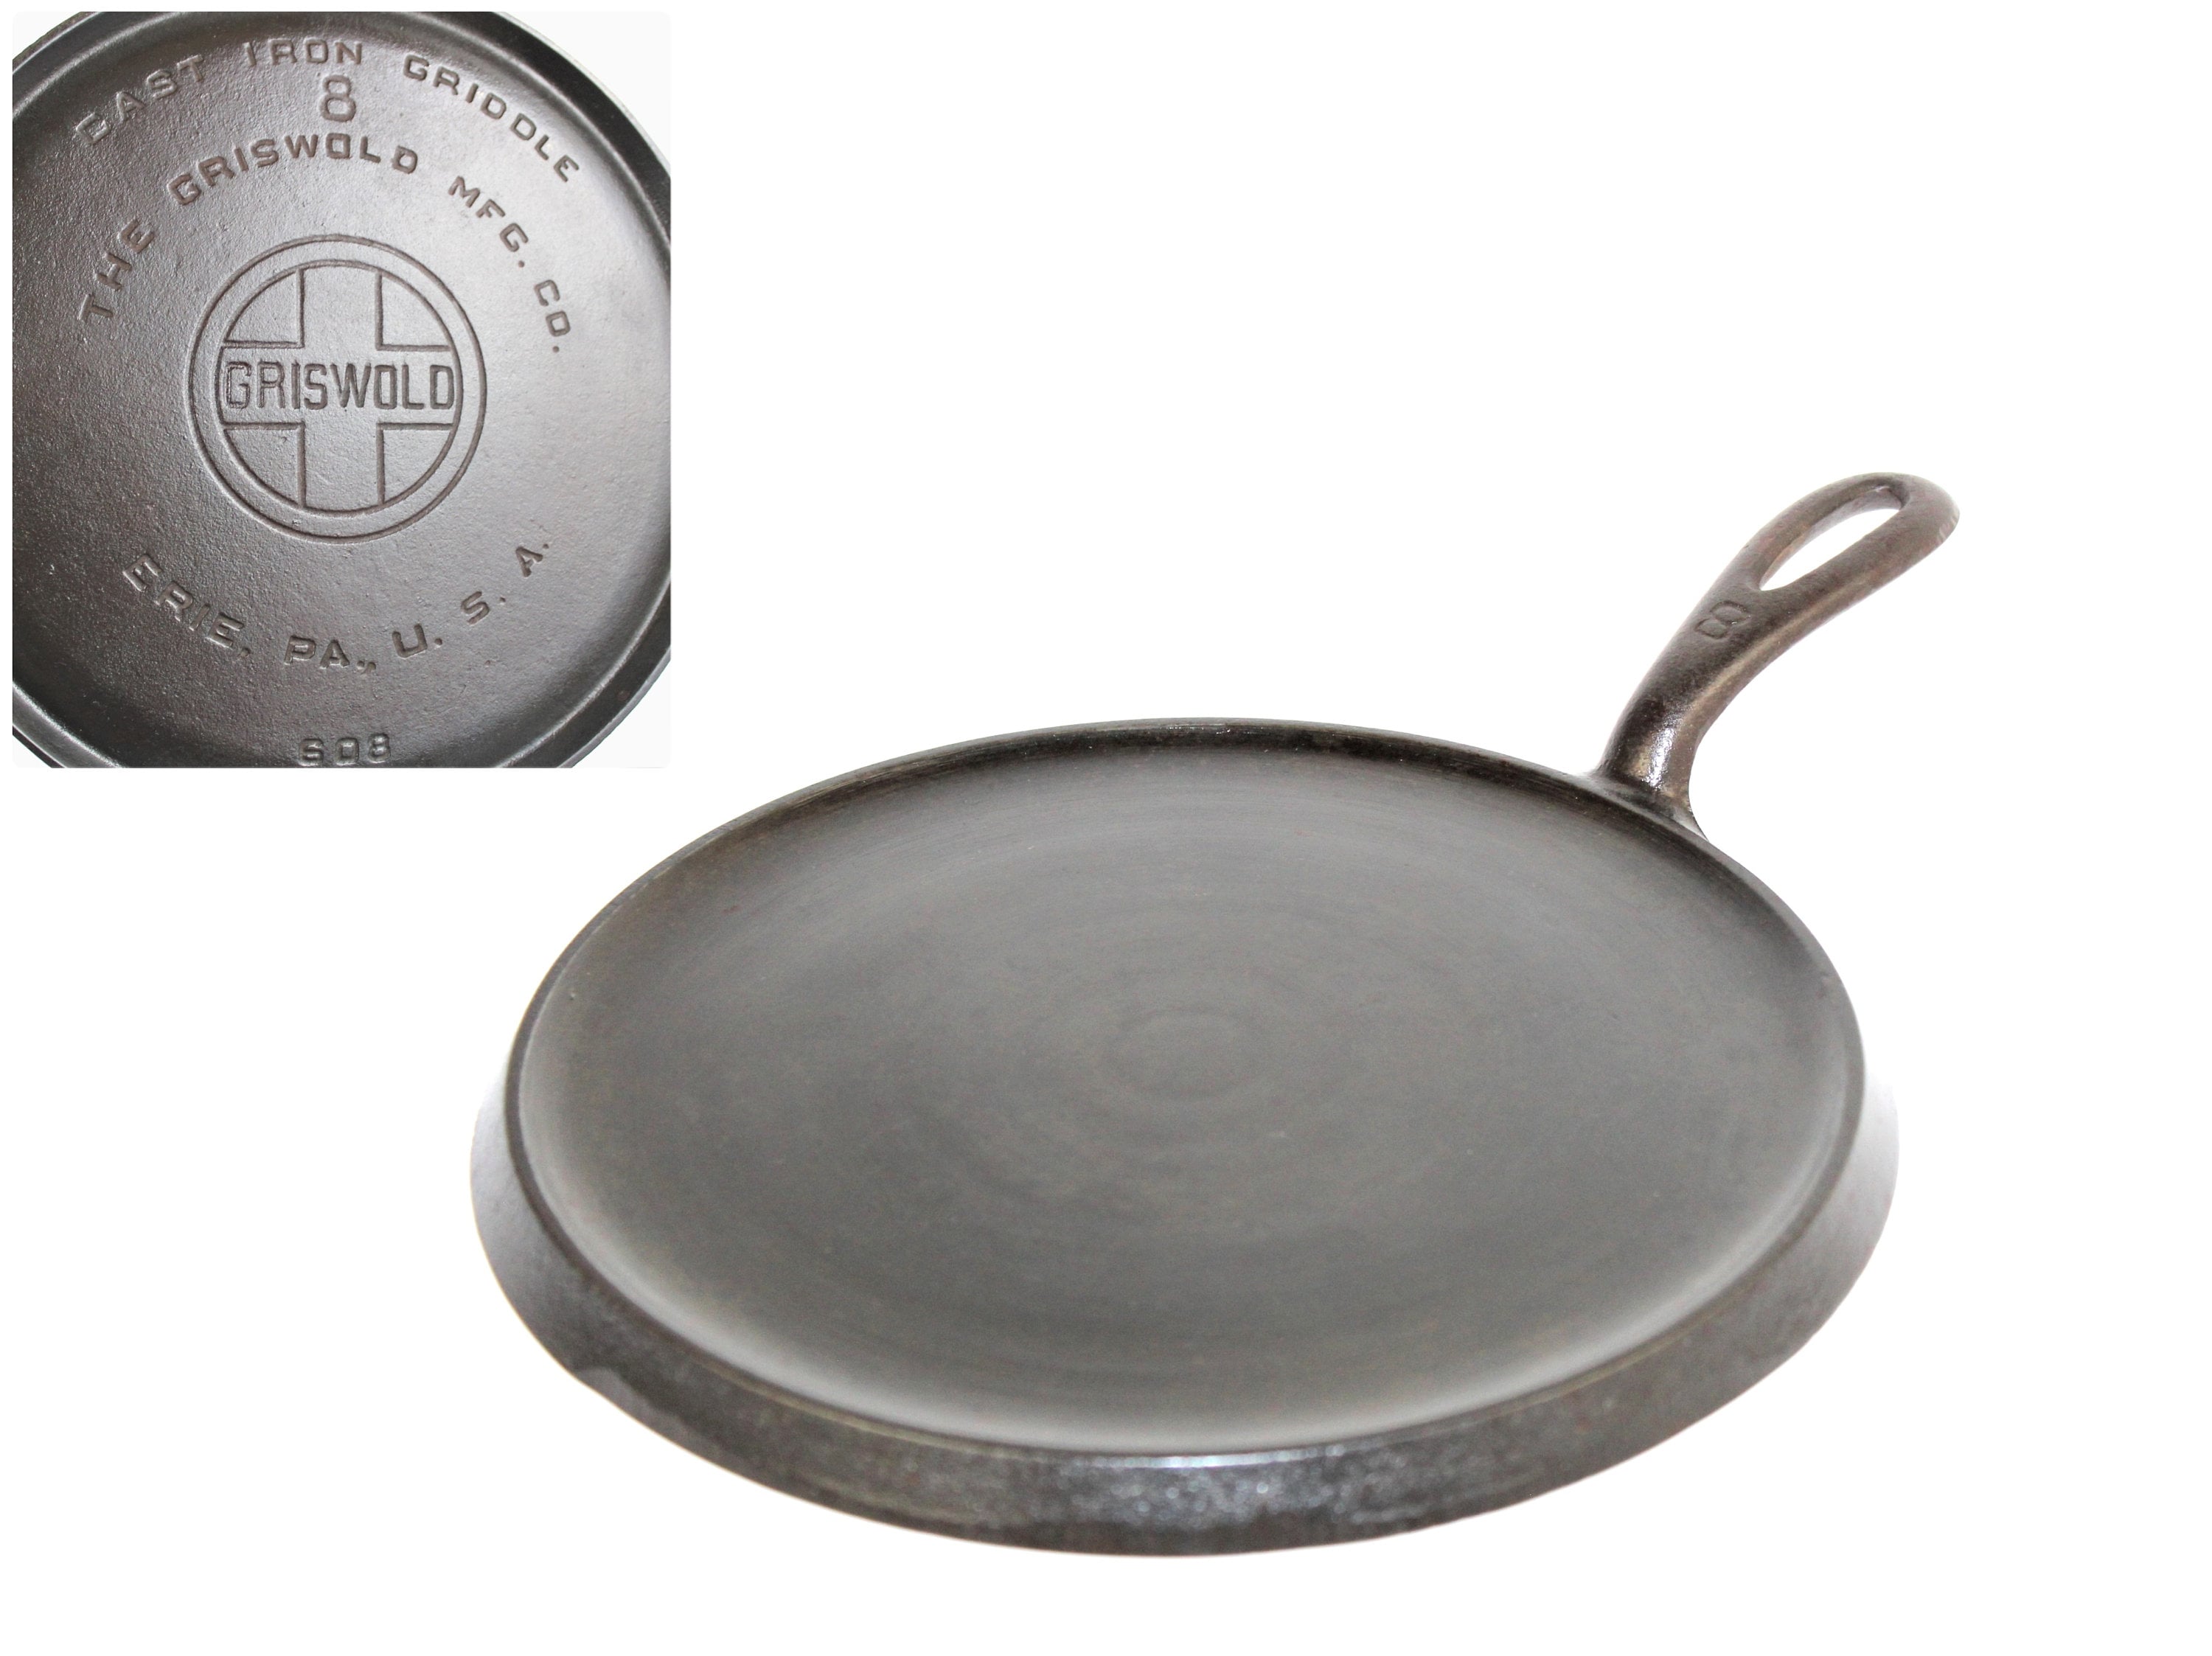 Griswold Cast Iron Cookware Part 6 #castiron #antique #history